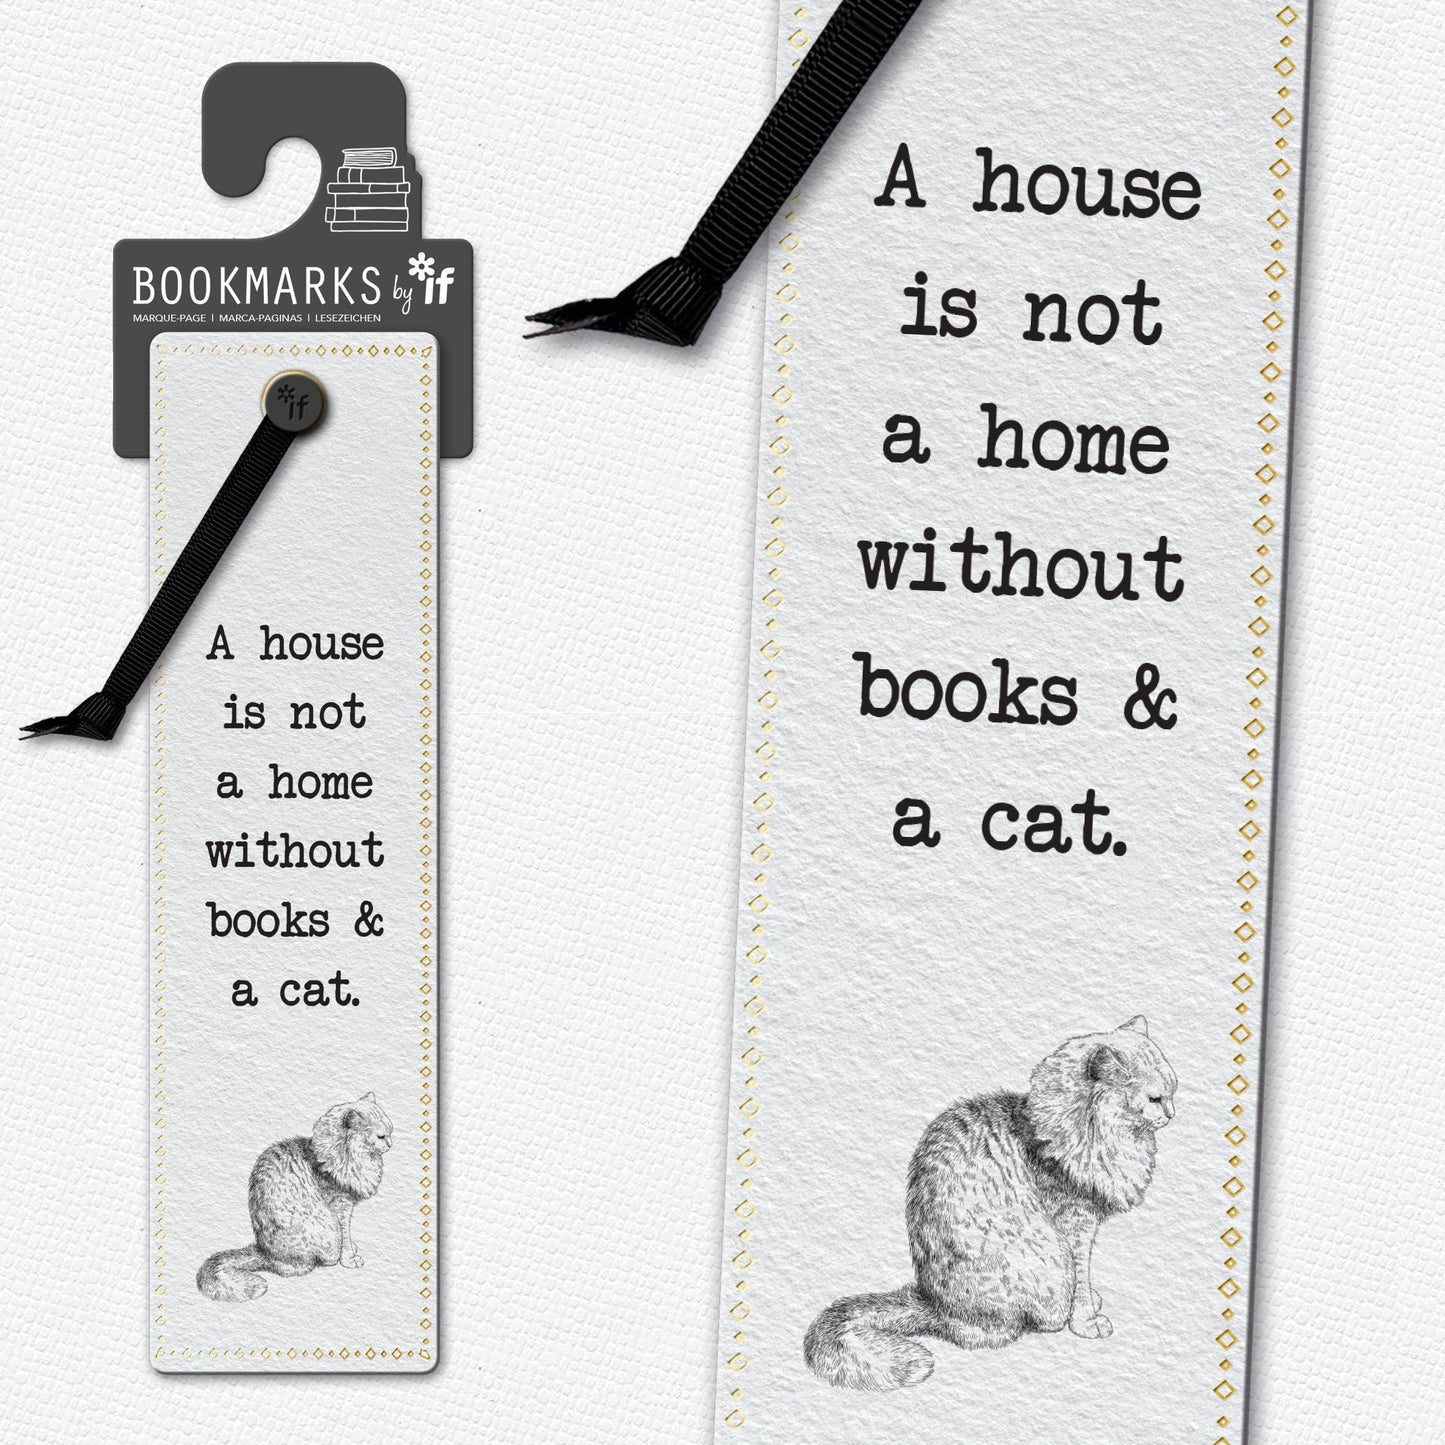 Literary Bookmarks: Grammar Police